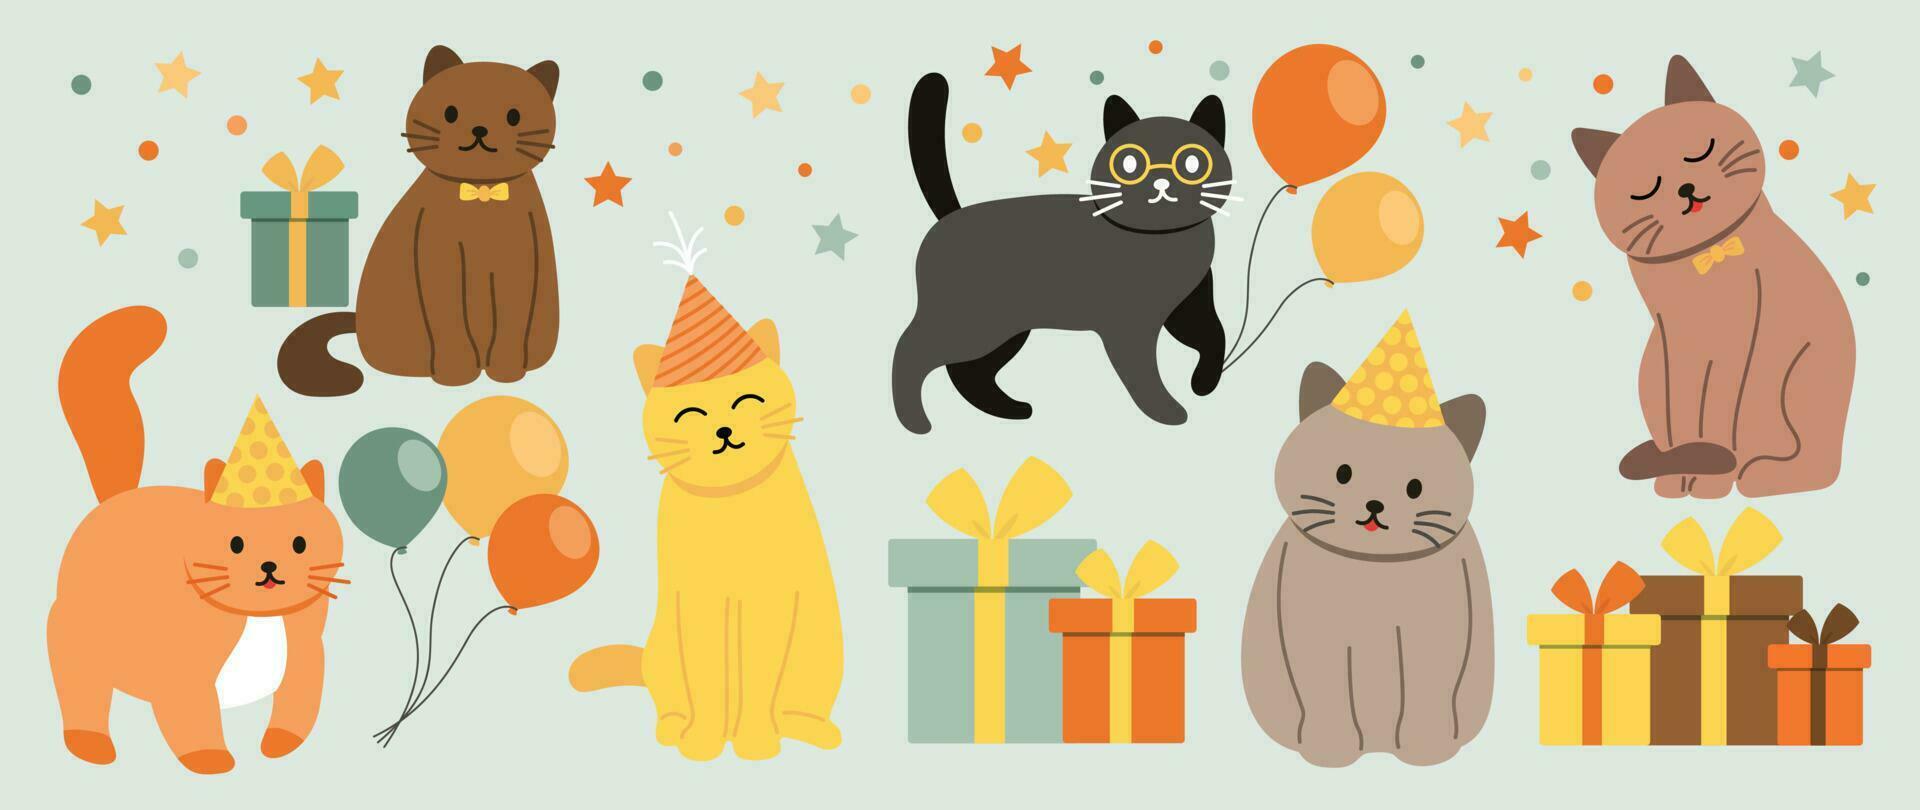 gelukkig verjaardag concept dier vector set. verzameling van aanbiddelijk huisdier, kat, ballon, geschenk. verjaardag partij grappig dier karakter illustratie voor groet kaart, uitnodiging, kinderen, opleiding, afdrukken.